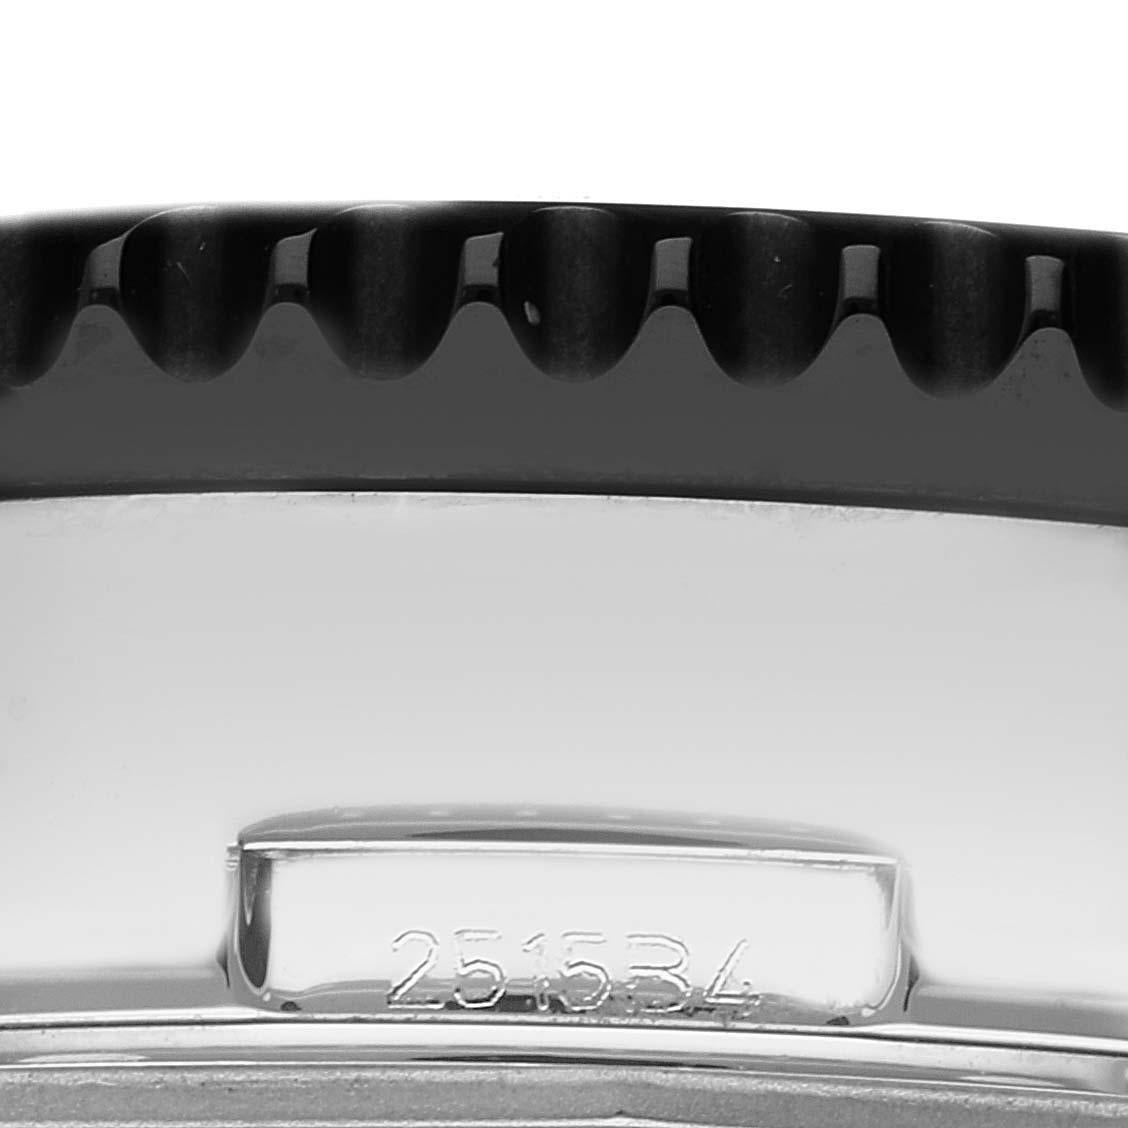 Breitling Chronoliner Schwarzes Zifferblatt Stahl Herrenuhr Y24310 Box Card. Automatisches, offiziell zertifiziertes Chronometerwerk mit Selbstaufzug. Chronographen-Funktion. Gehäuse aus Edelstahl mit einem Durchmesser von 46 mm. Breitling-Logo auf